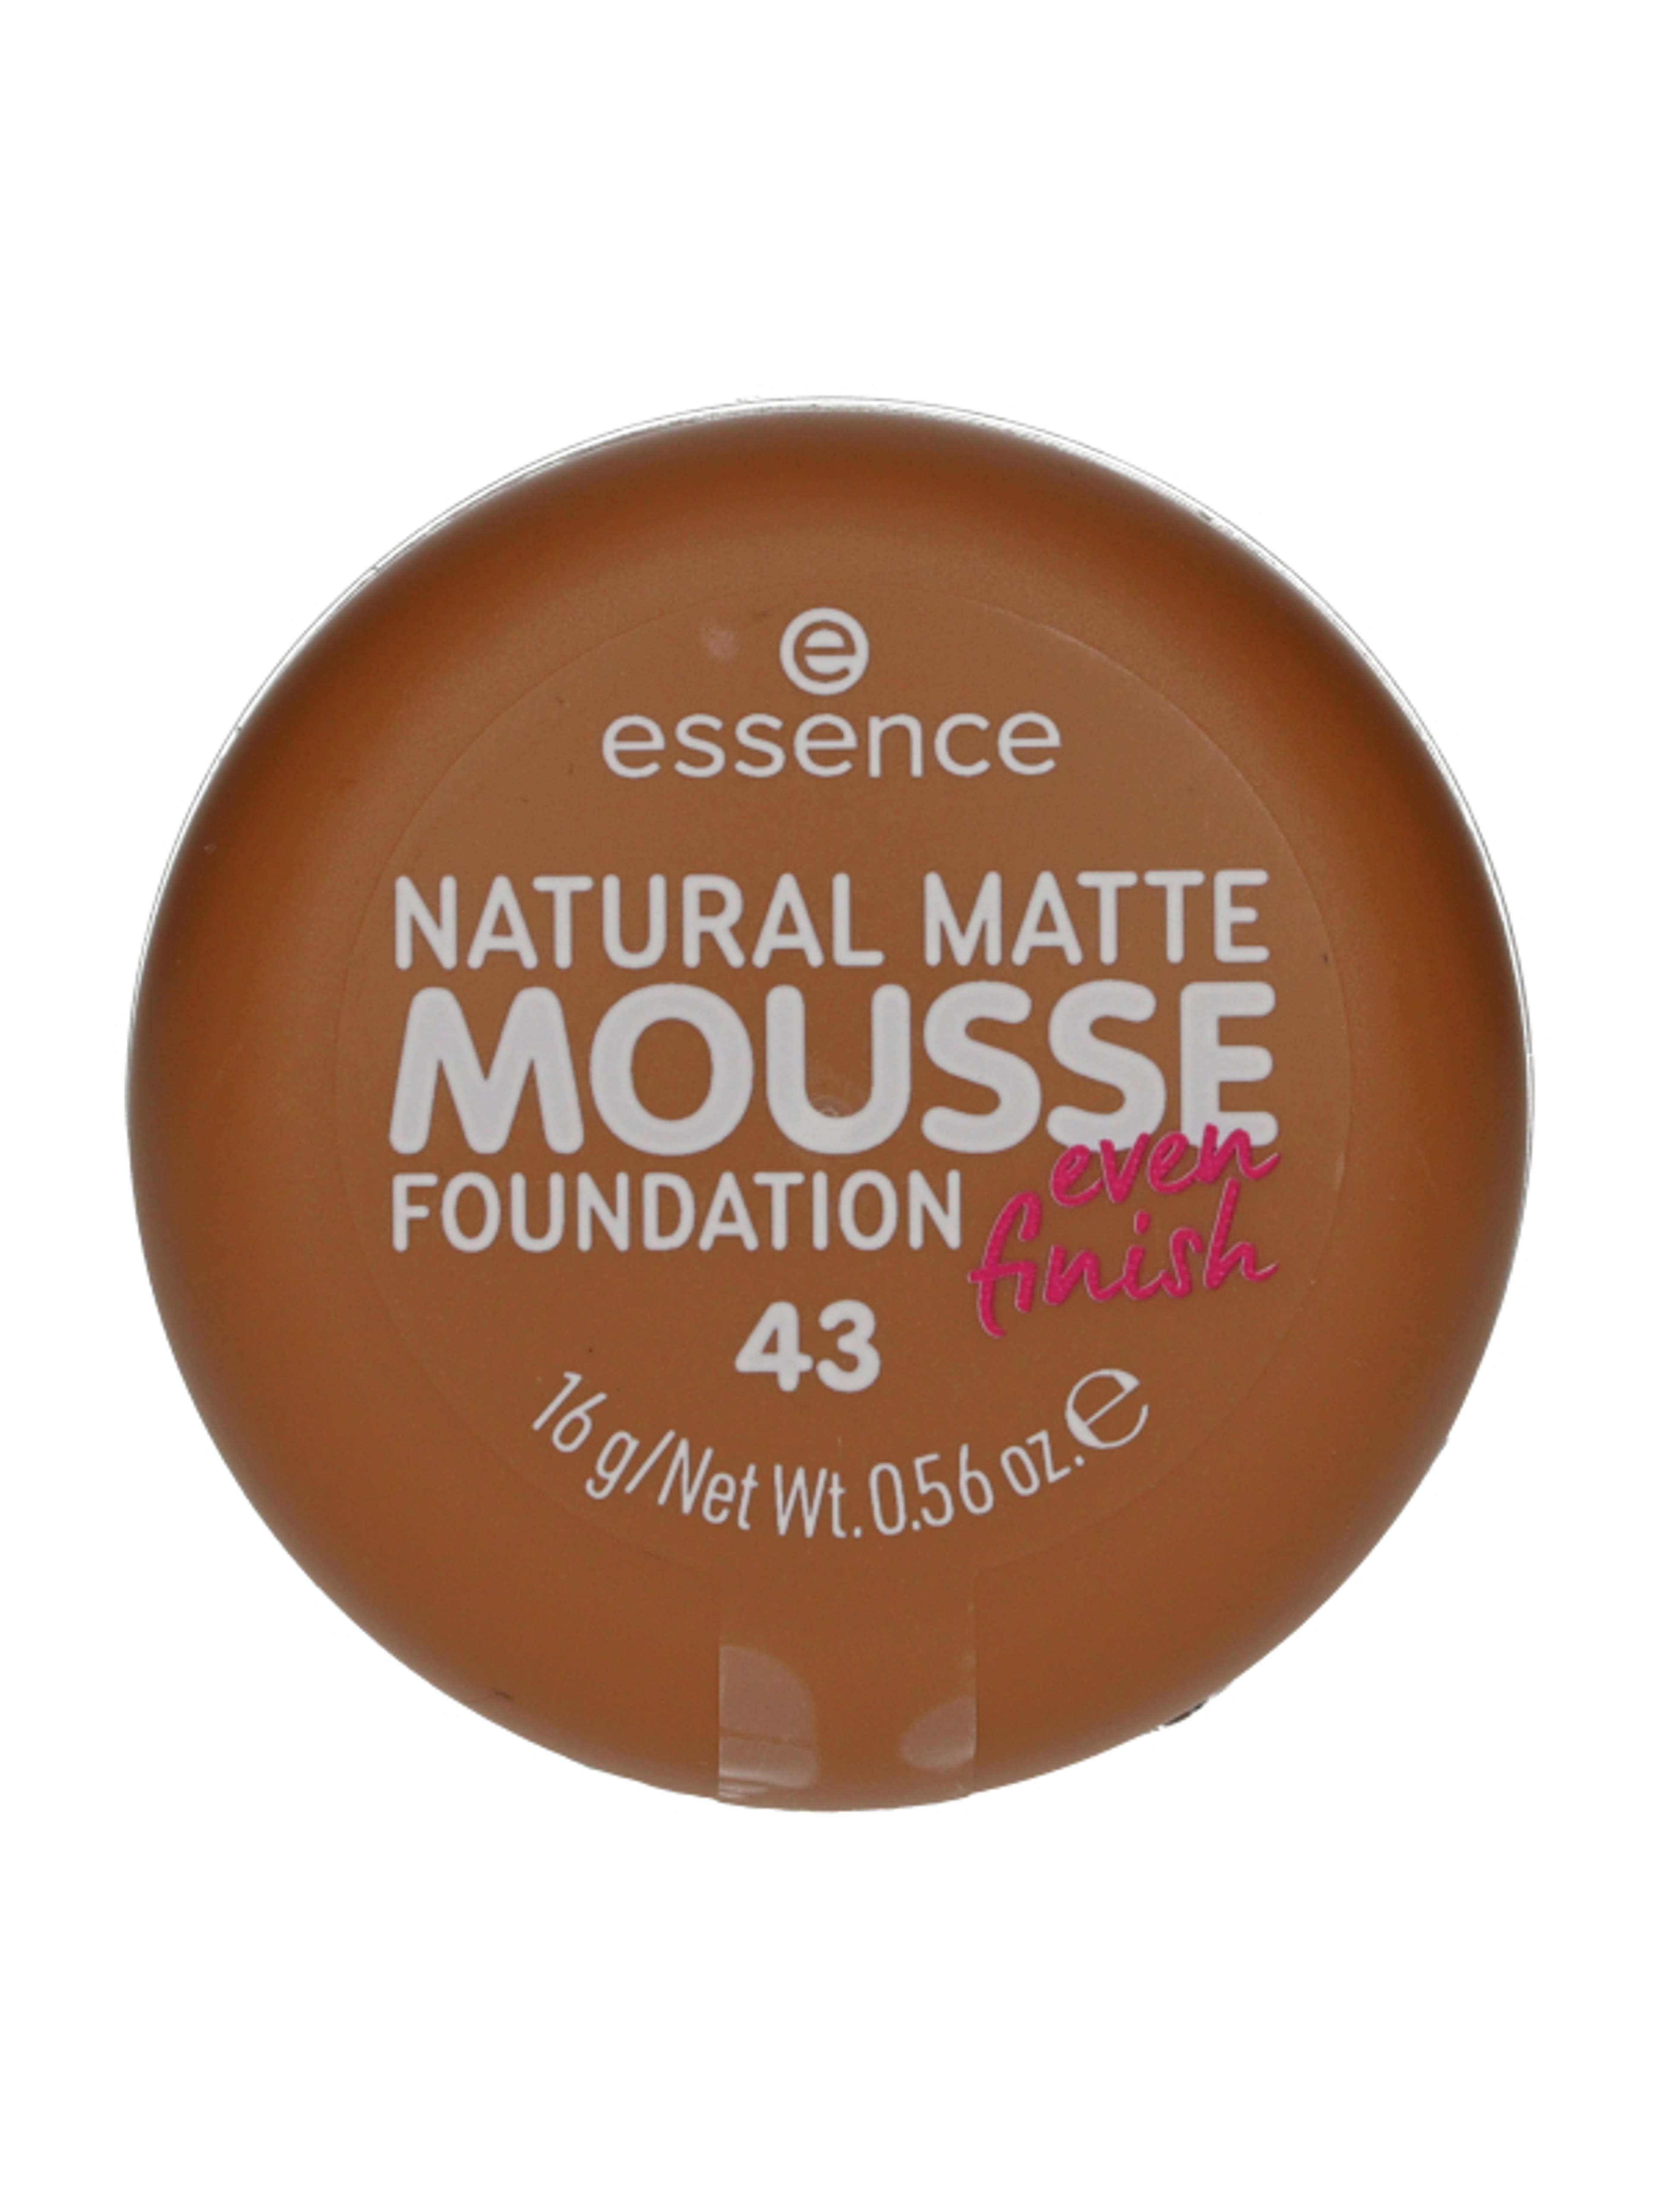 Essence Natural Matte Mousse alapozó /43 - 1 db-1